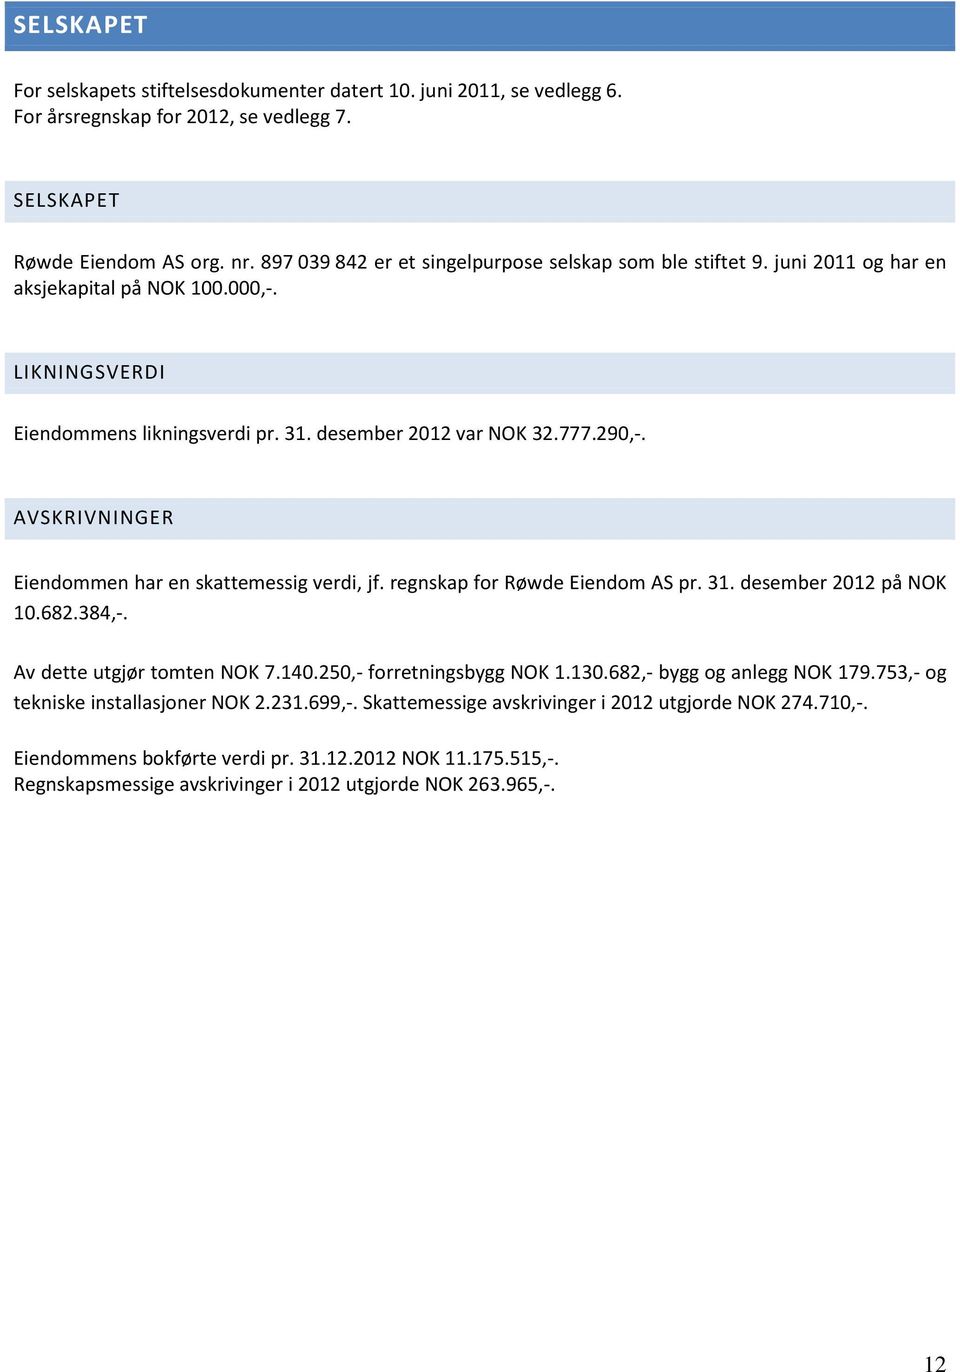 AVSKRIVNINGER Eiendommen har en skattemessig verdi, jf. regnskap for Røwde Eiendom AS pr. 31. desember 2012 på NOK 10.682.384,-. Av dette utgjør tomten NOK 7.140.250,- forretningsbygg NOK 1.130.